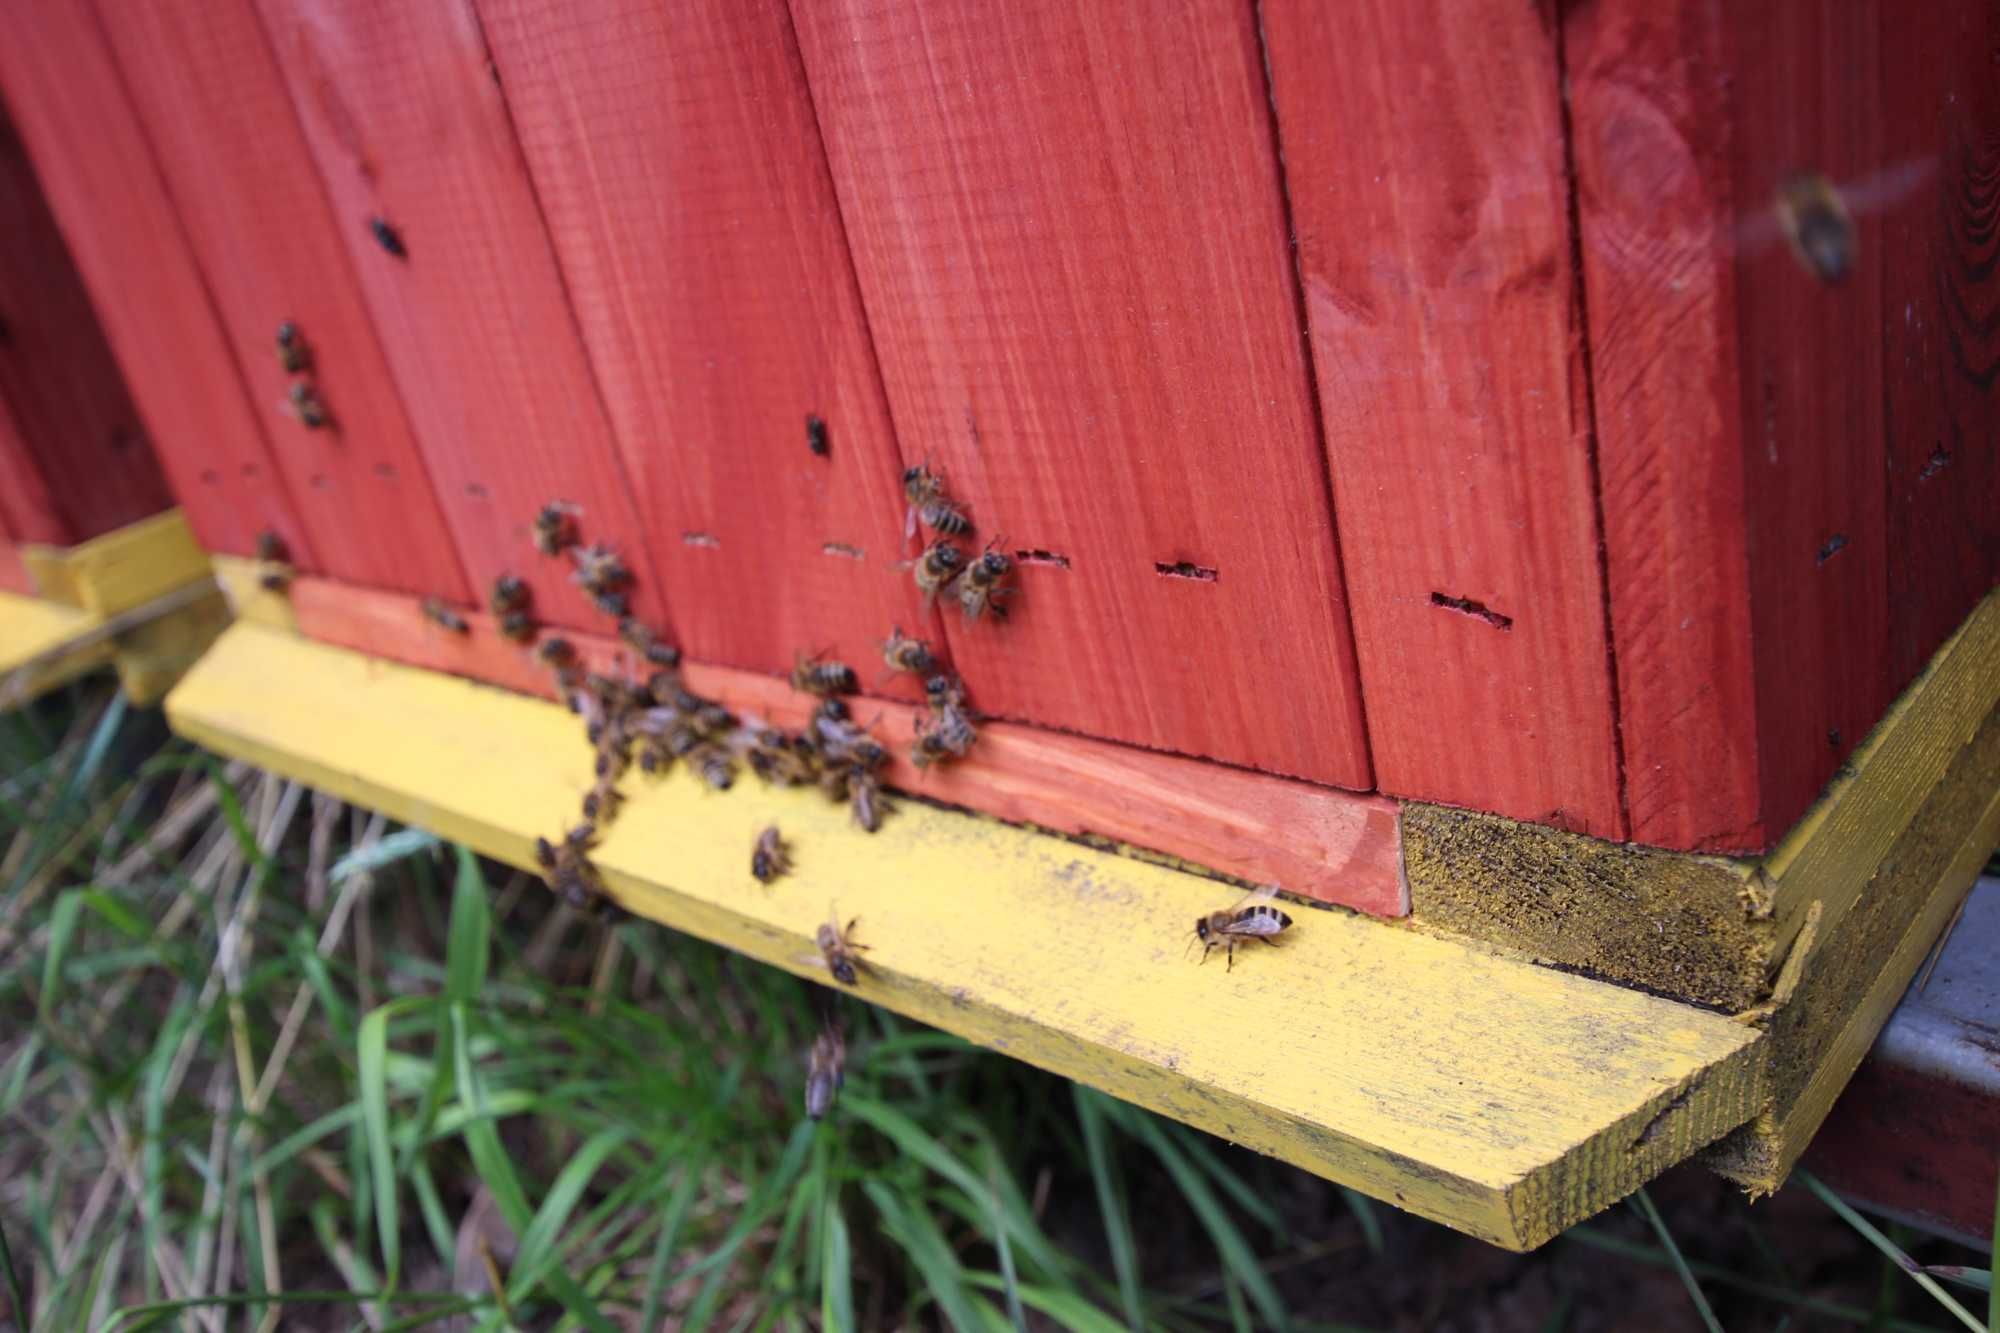 zdrowe pszczoły ul ule wielkopolski miód pasieka rodziny odklady